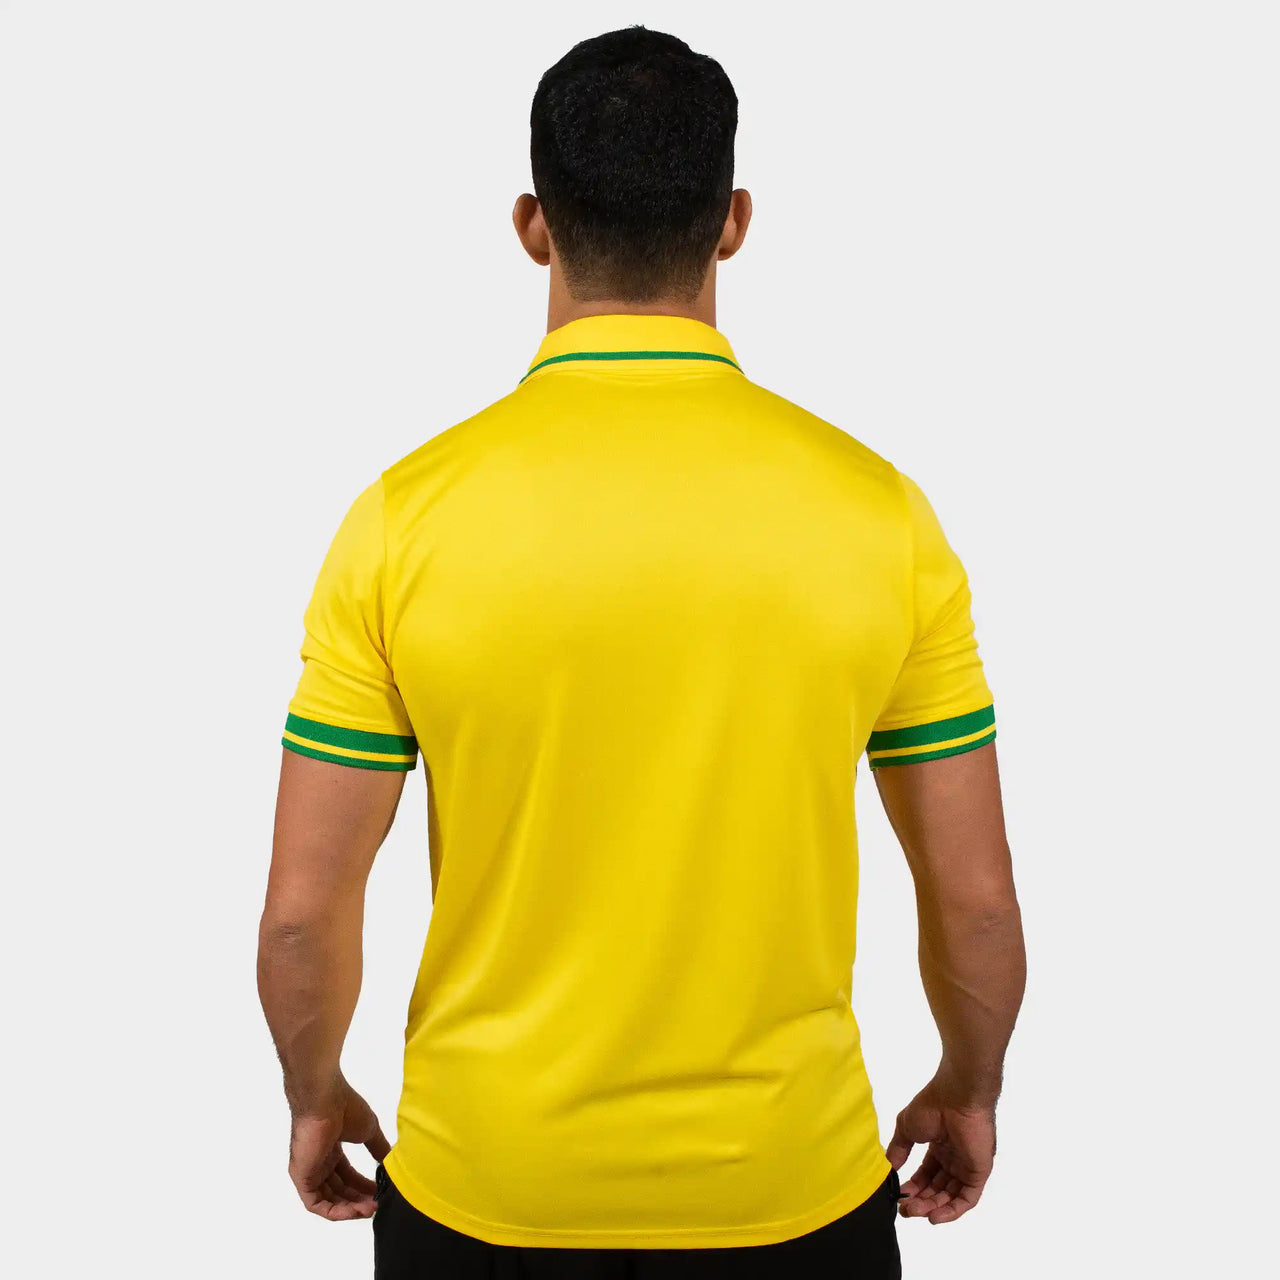 Brasilien Herren Poloshirt Gelb